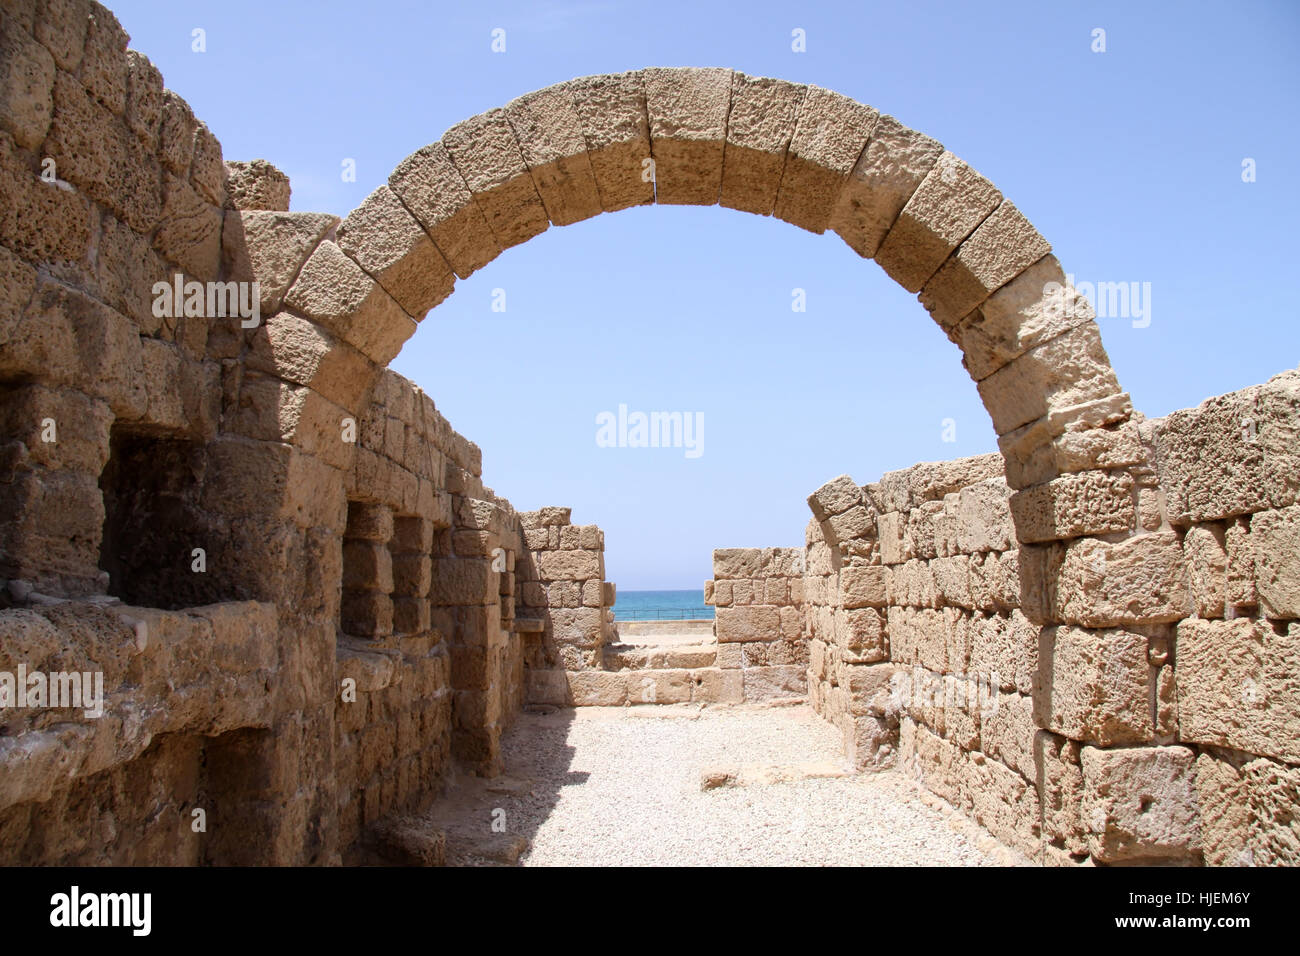 Israël, l'archéologie, de la palestine, historique, histoire, arc, plage, mer, l Banque D'Images